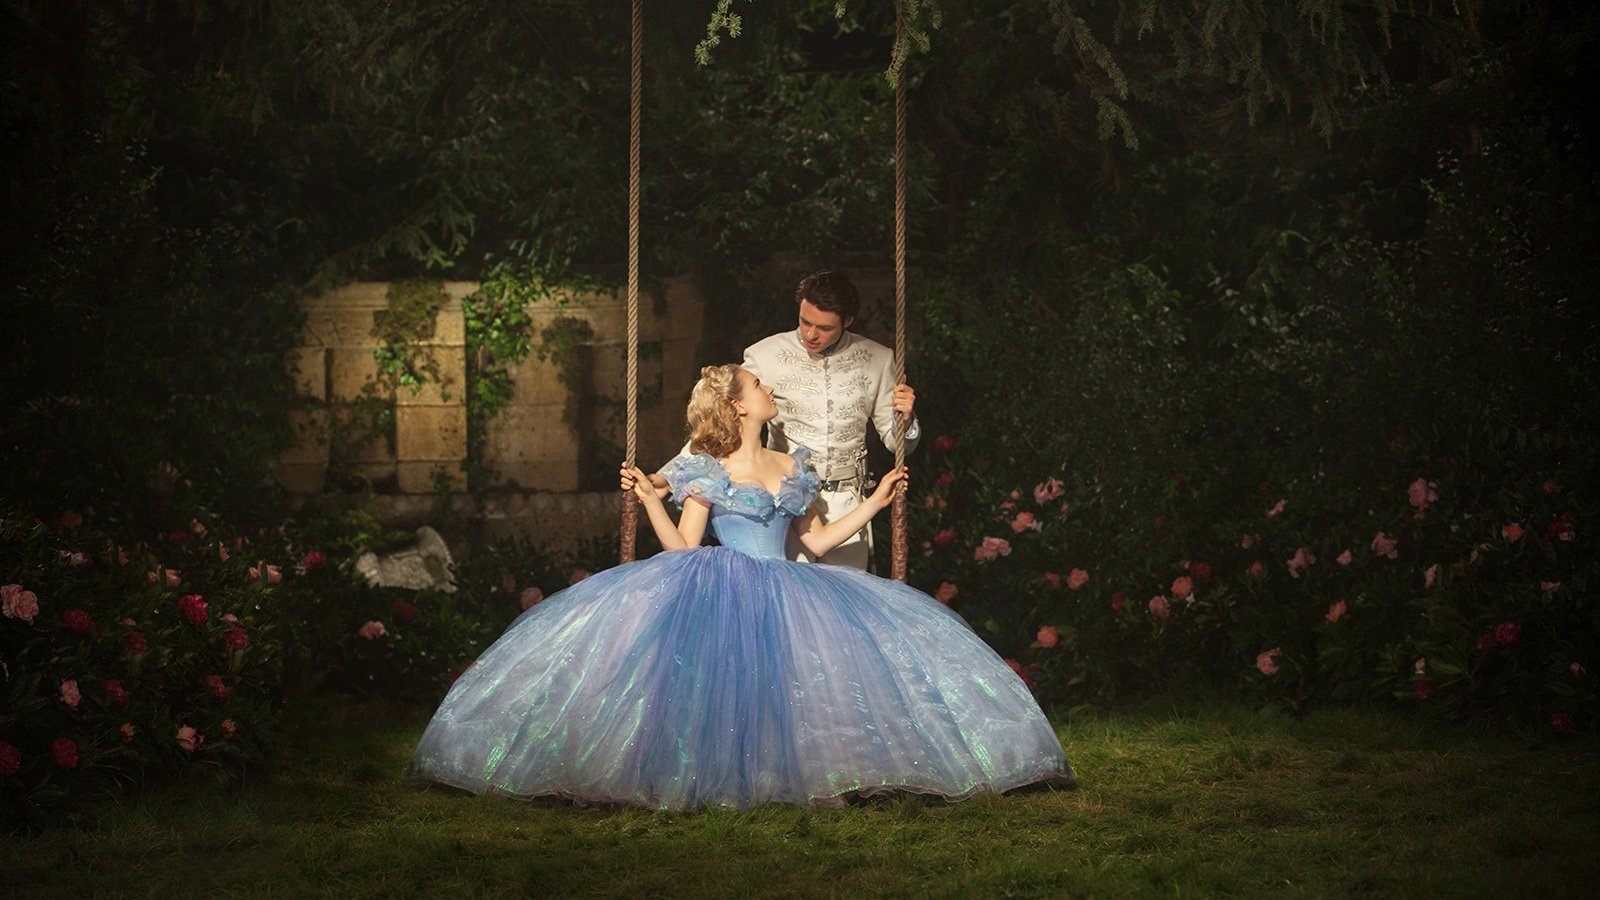 Cena de filme 'Cinderela' com princesa em balanço e príncipe atrás, ambos se olhando